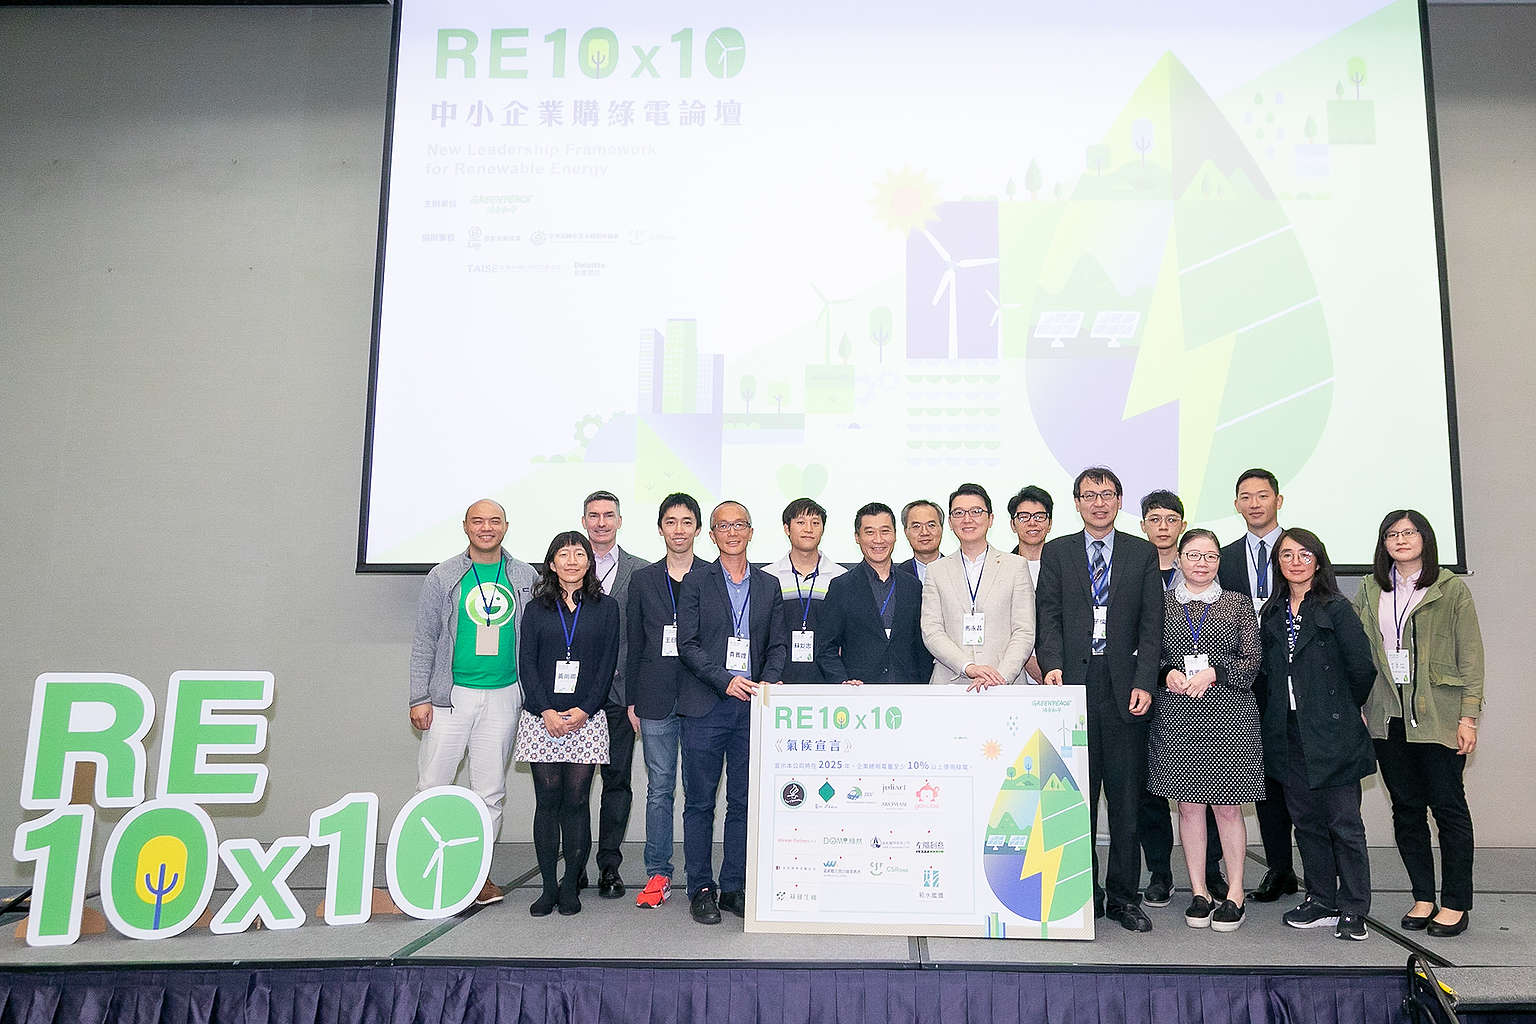 2020年10月29日，綠色和平舉辦「RE10x10 中小企業購綠電論壇」，當日有14間中小企業簽署《RE 10x10氣候宣言》，承諾在2025年前將10%用電轉為再生能源。